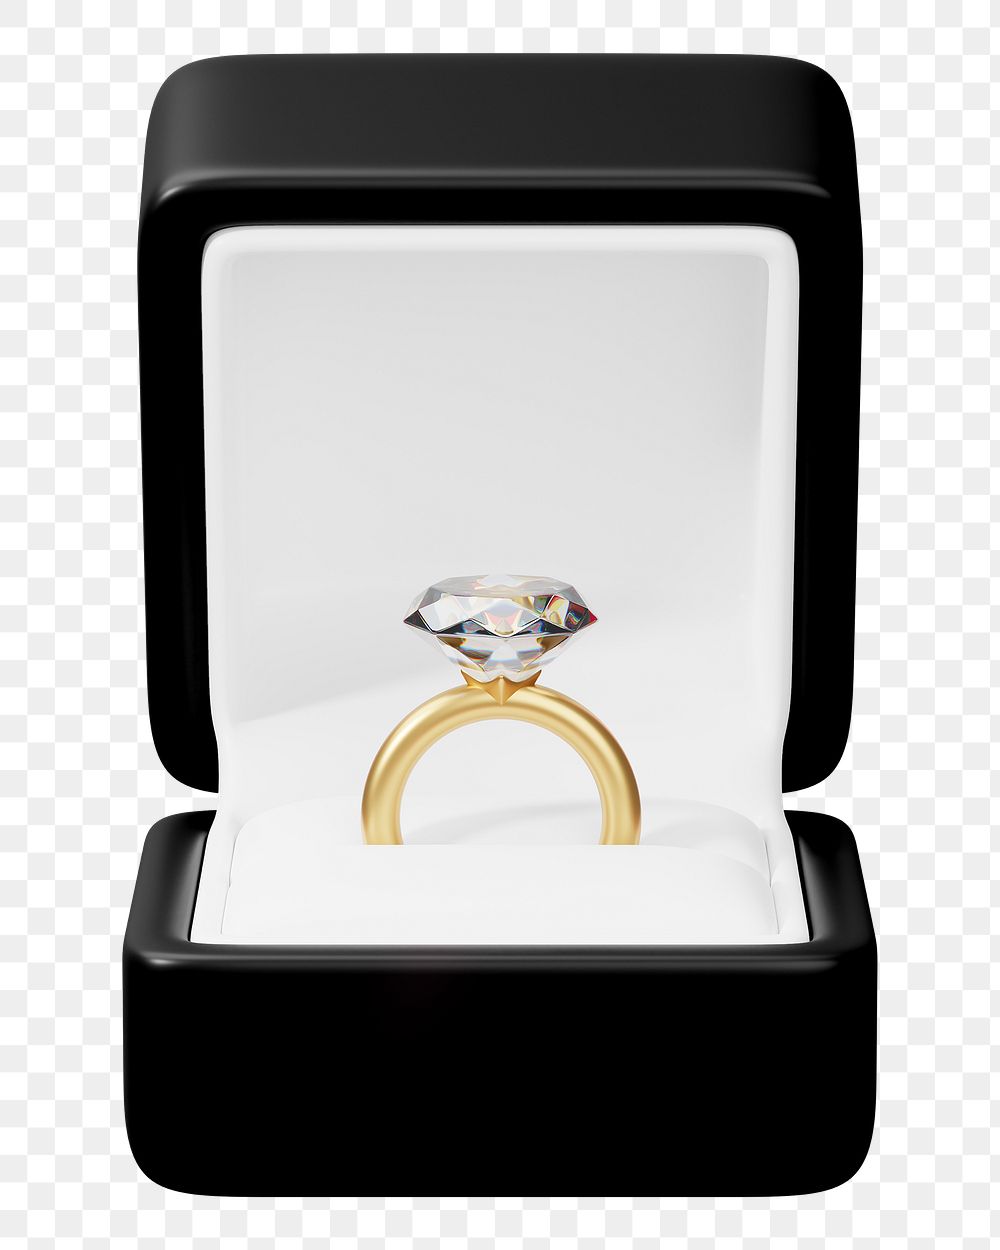 Black engagement ring box png 3D illustration, transparent background